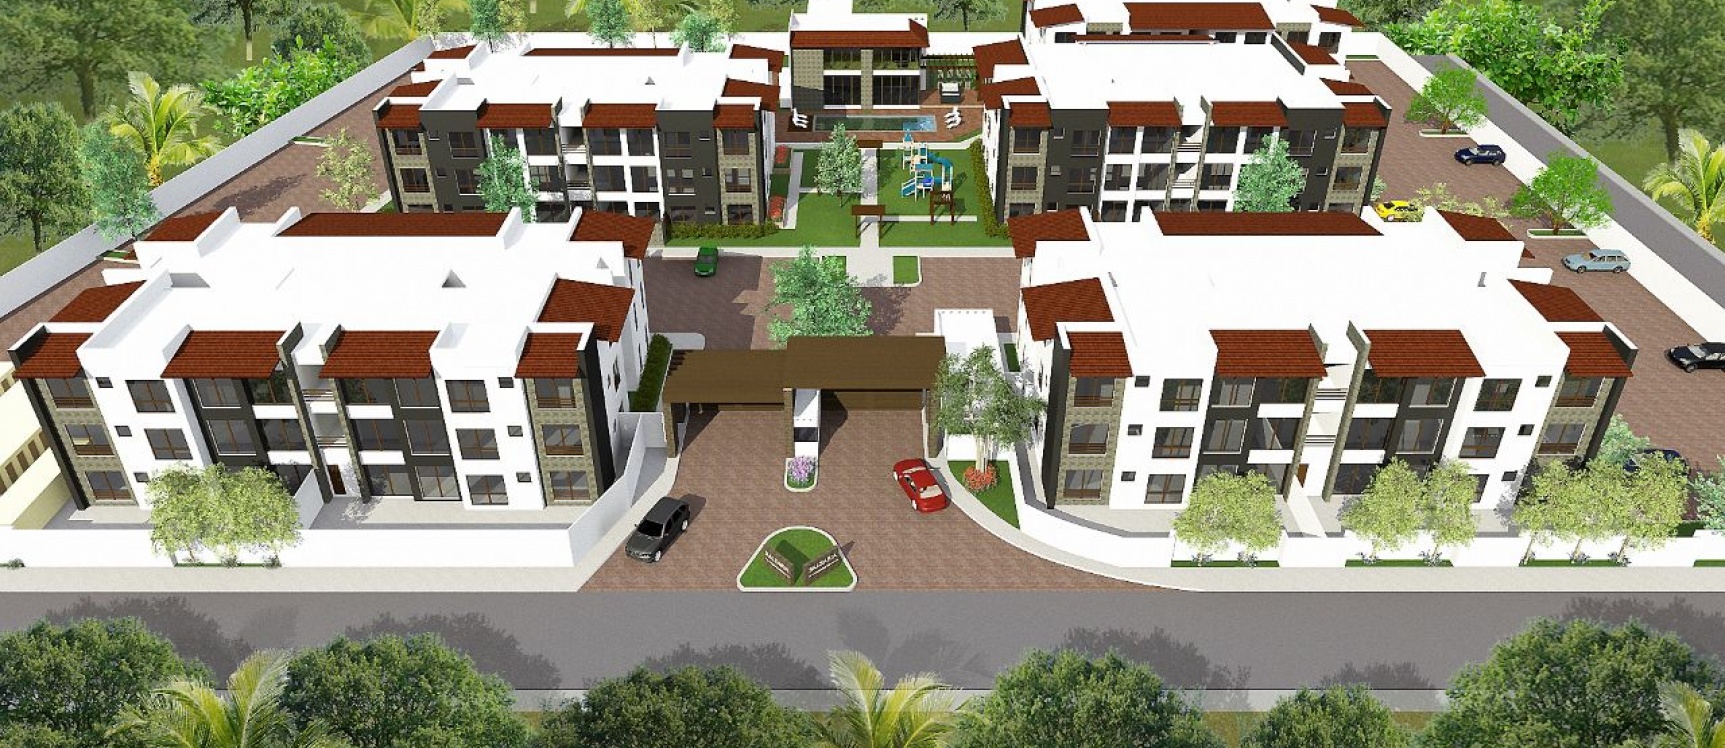 GeoBienes - Departamento en venta sector Samborondón - Plusvalia Guayaquil Casas de venta y alquiler Inmobiliaria Ecuador